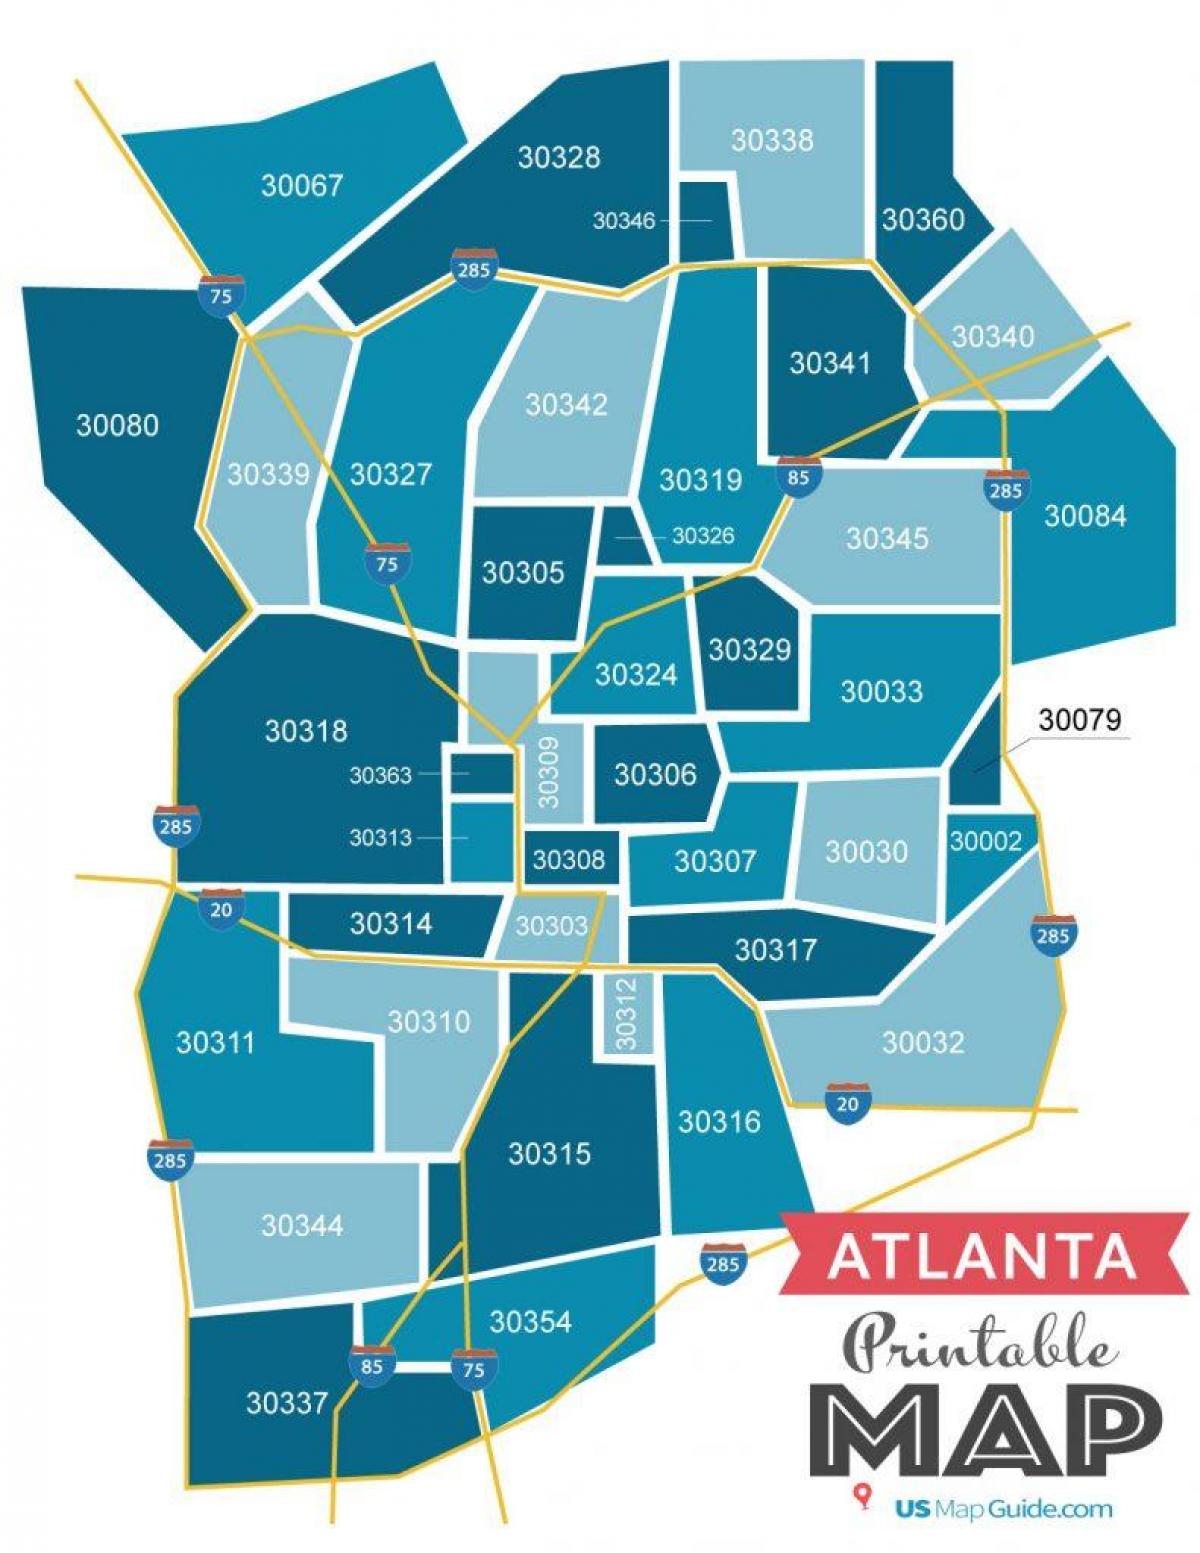 Mapa de los códigos postales de Atlanta